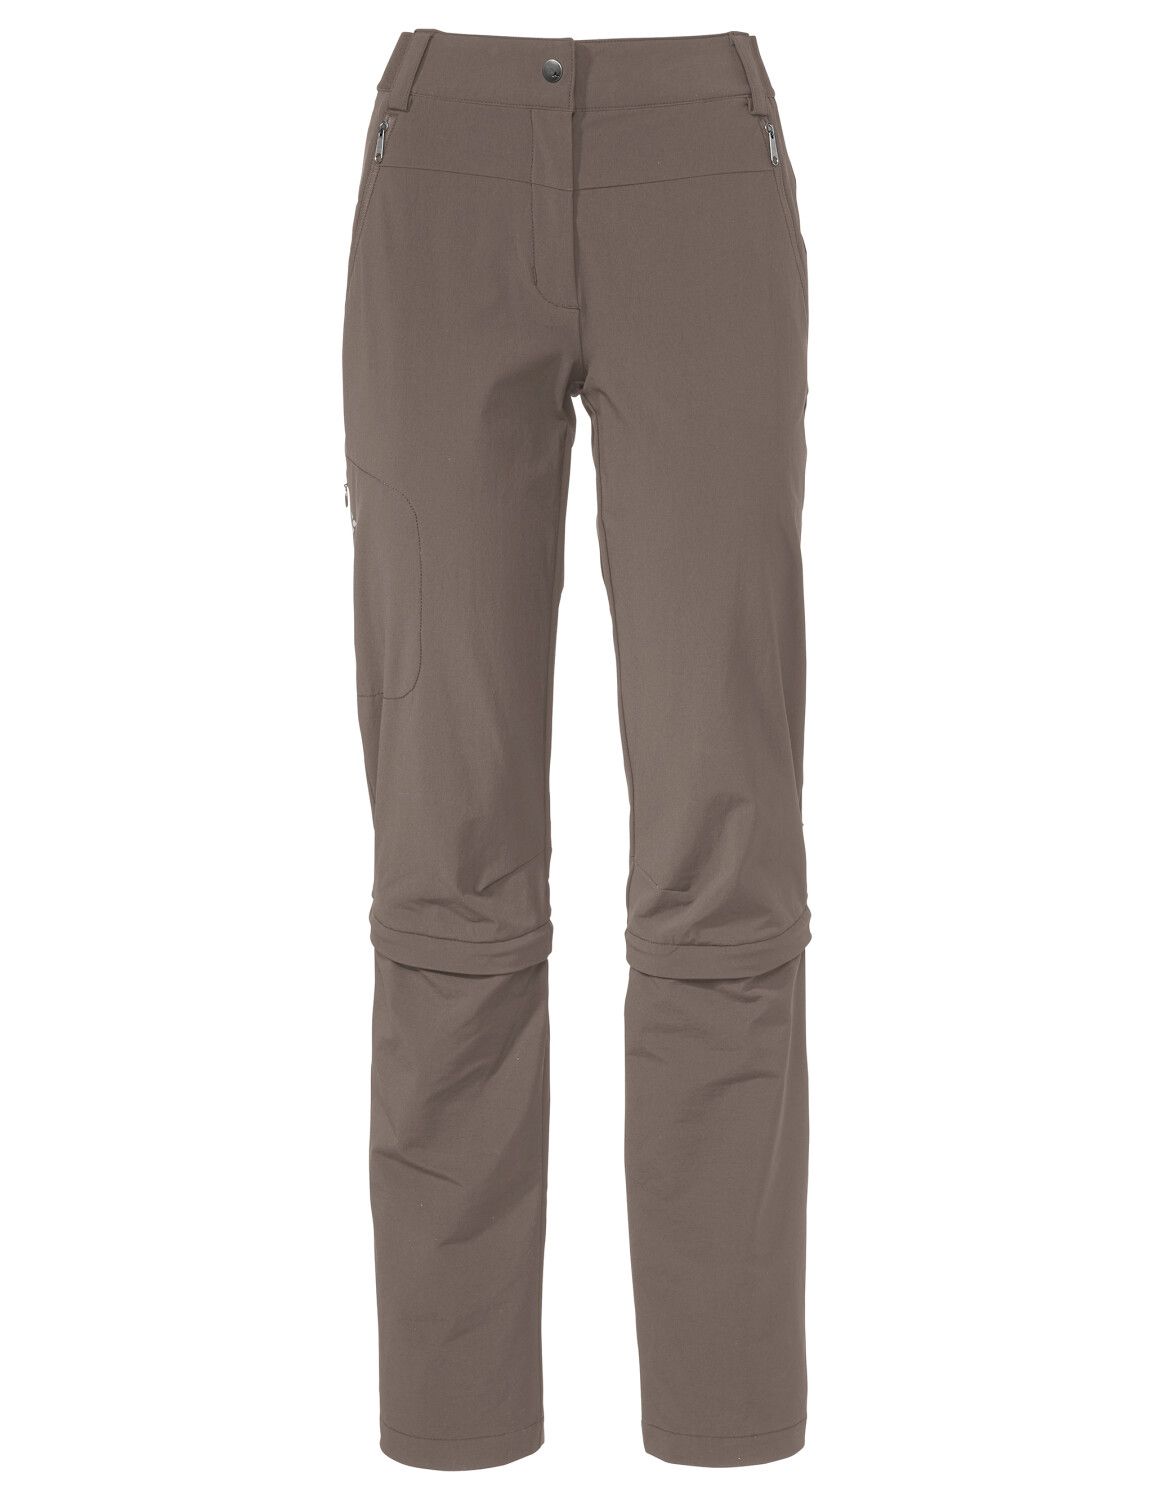 VAUDE Women's Farley Stretch Capri T-Zip Pants III (Bild 37)